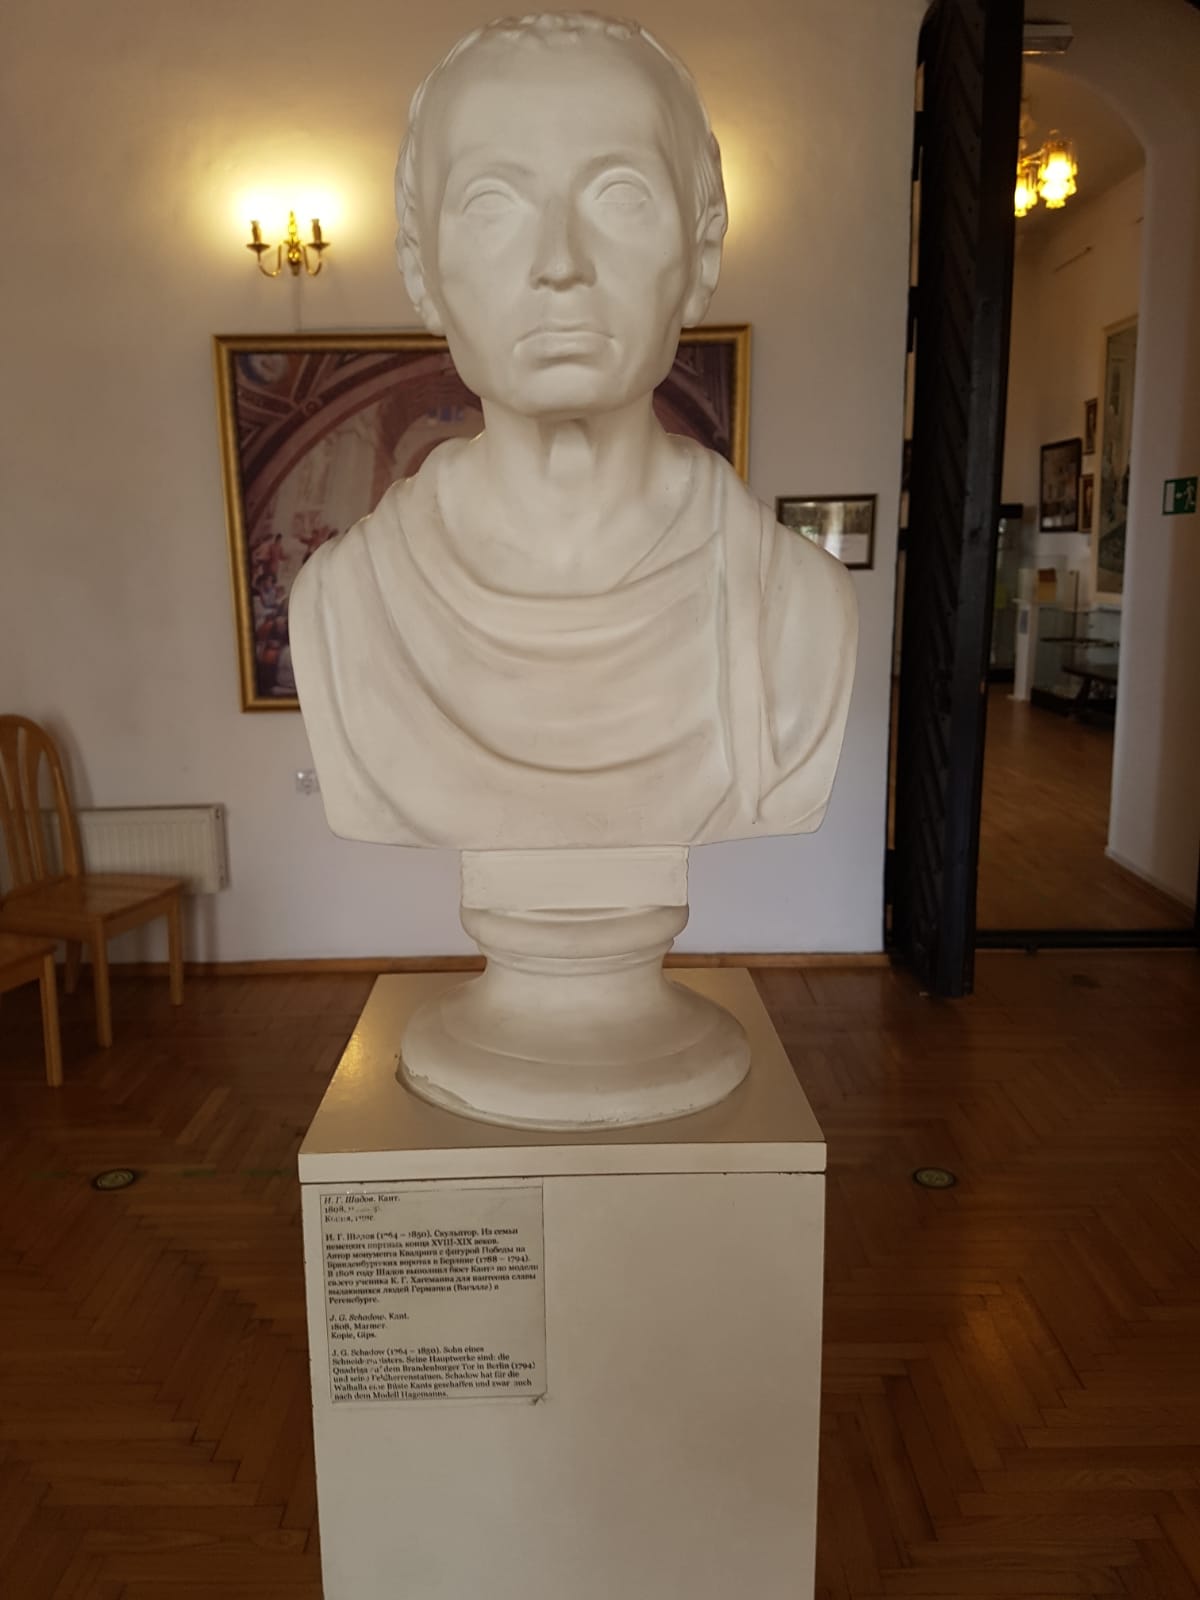 פסל של עמנואל קאנט במוזיאון בקלינינגרד (צילום: עמיר פלג)